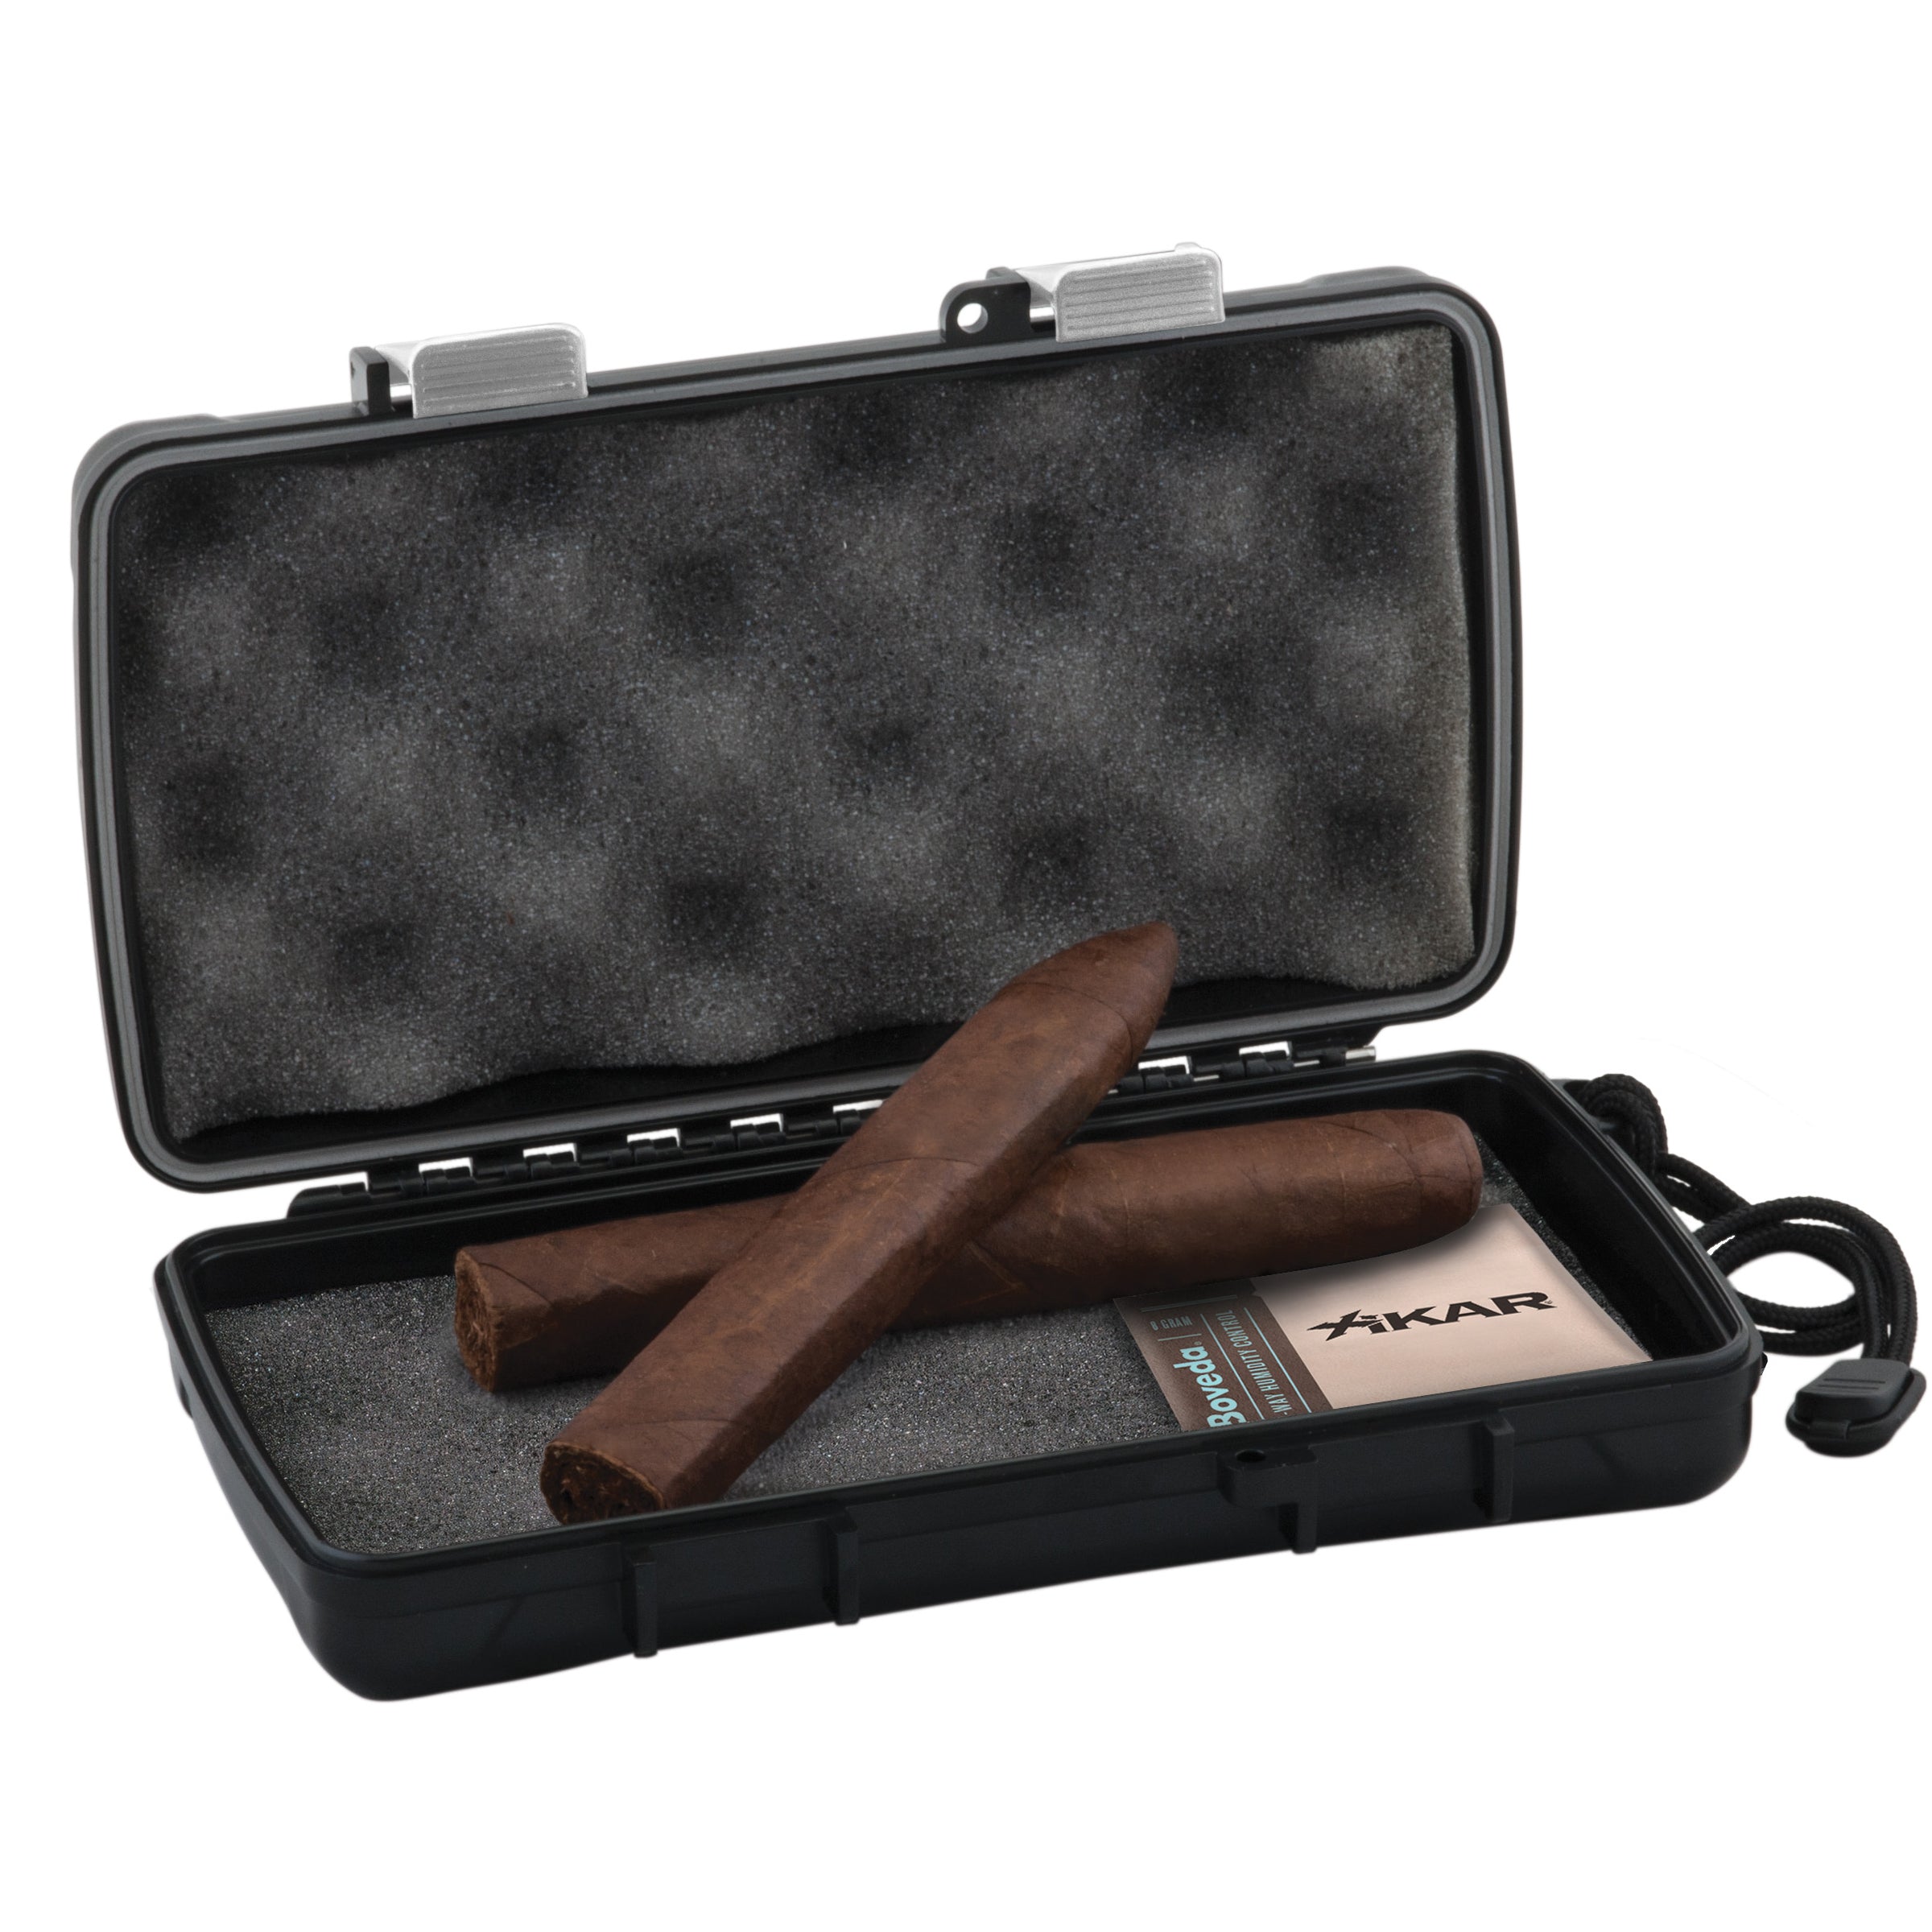 Xikar 5 Cigar Travel Humidor